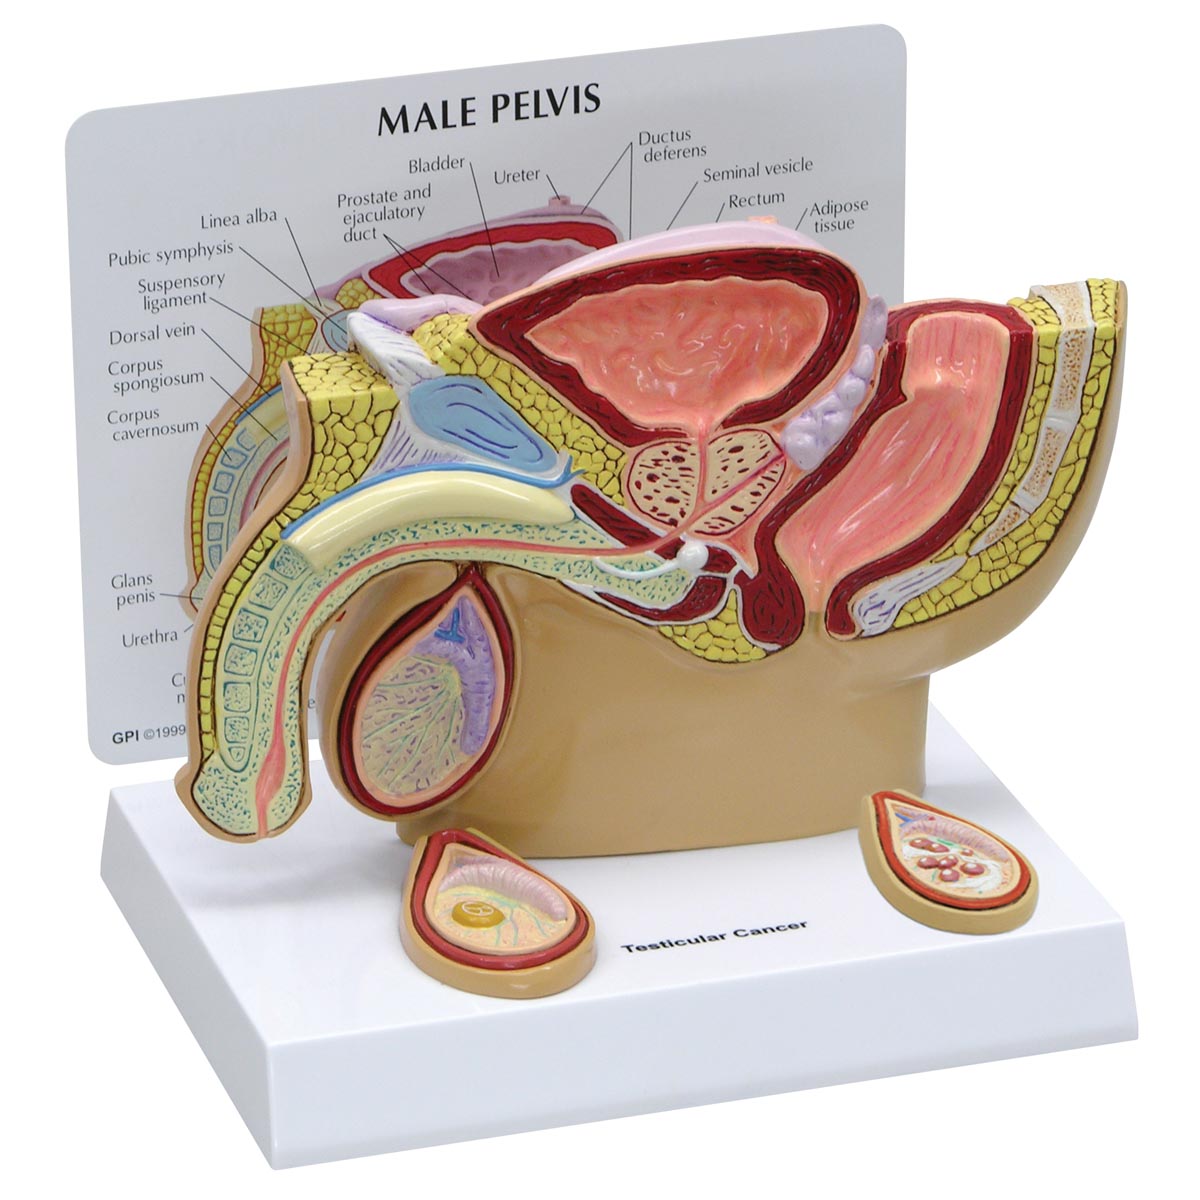 Modell eines männlichen Beckens mit Hoden, Bestellnummer 1019565, 3570, GPI Anatomicals